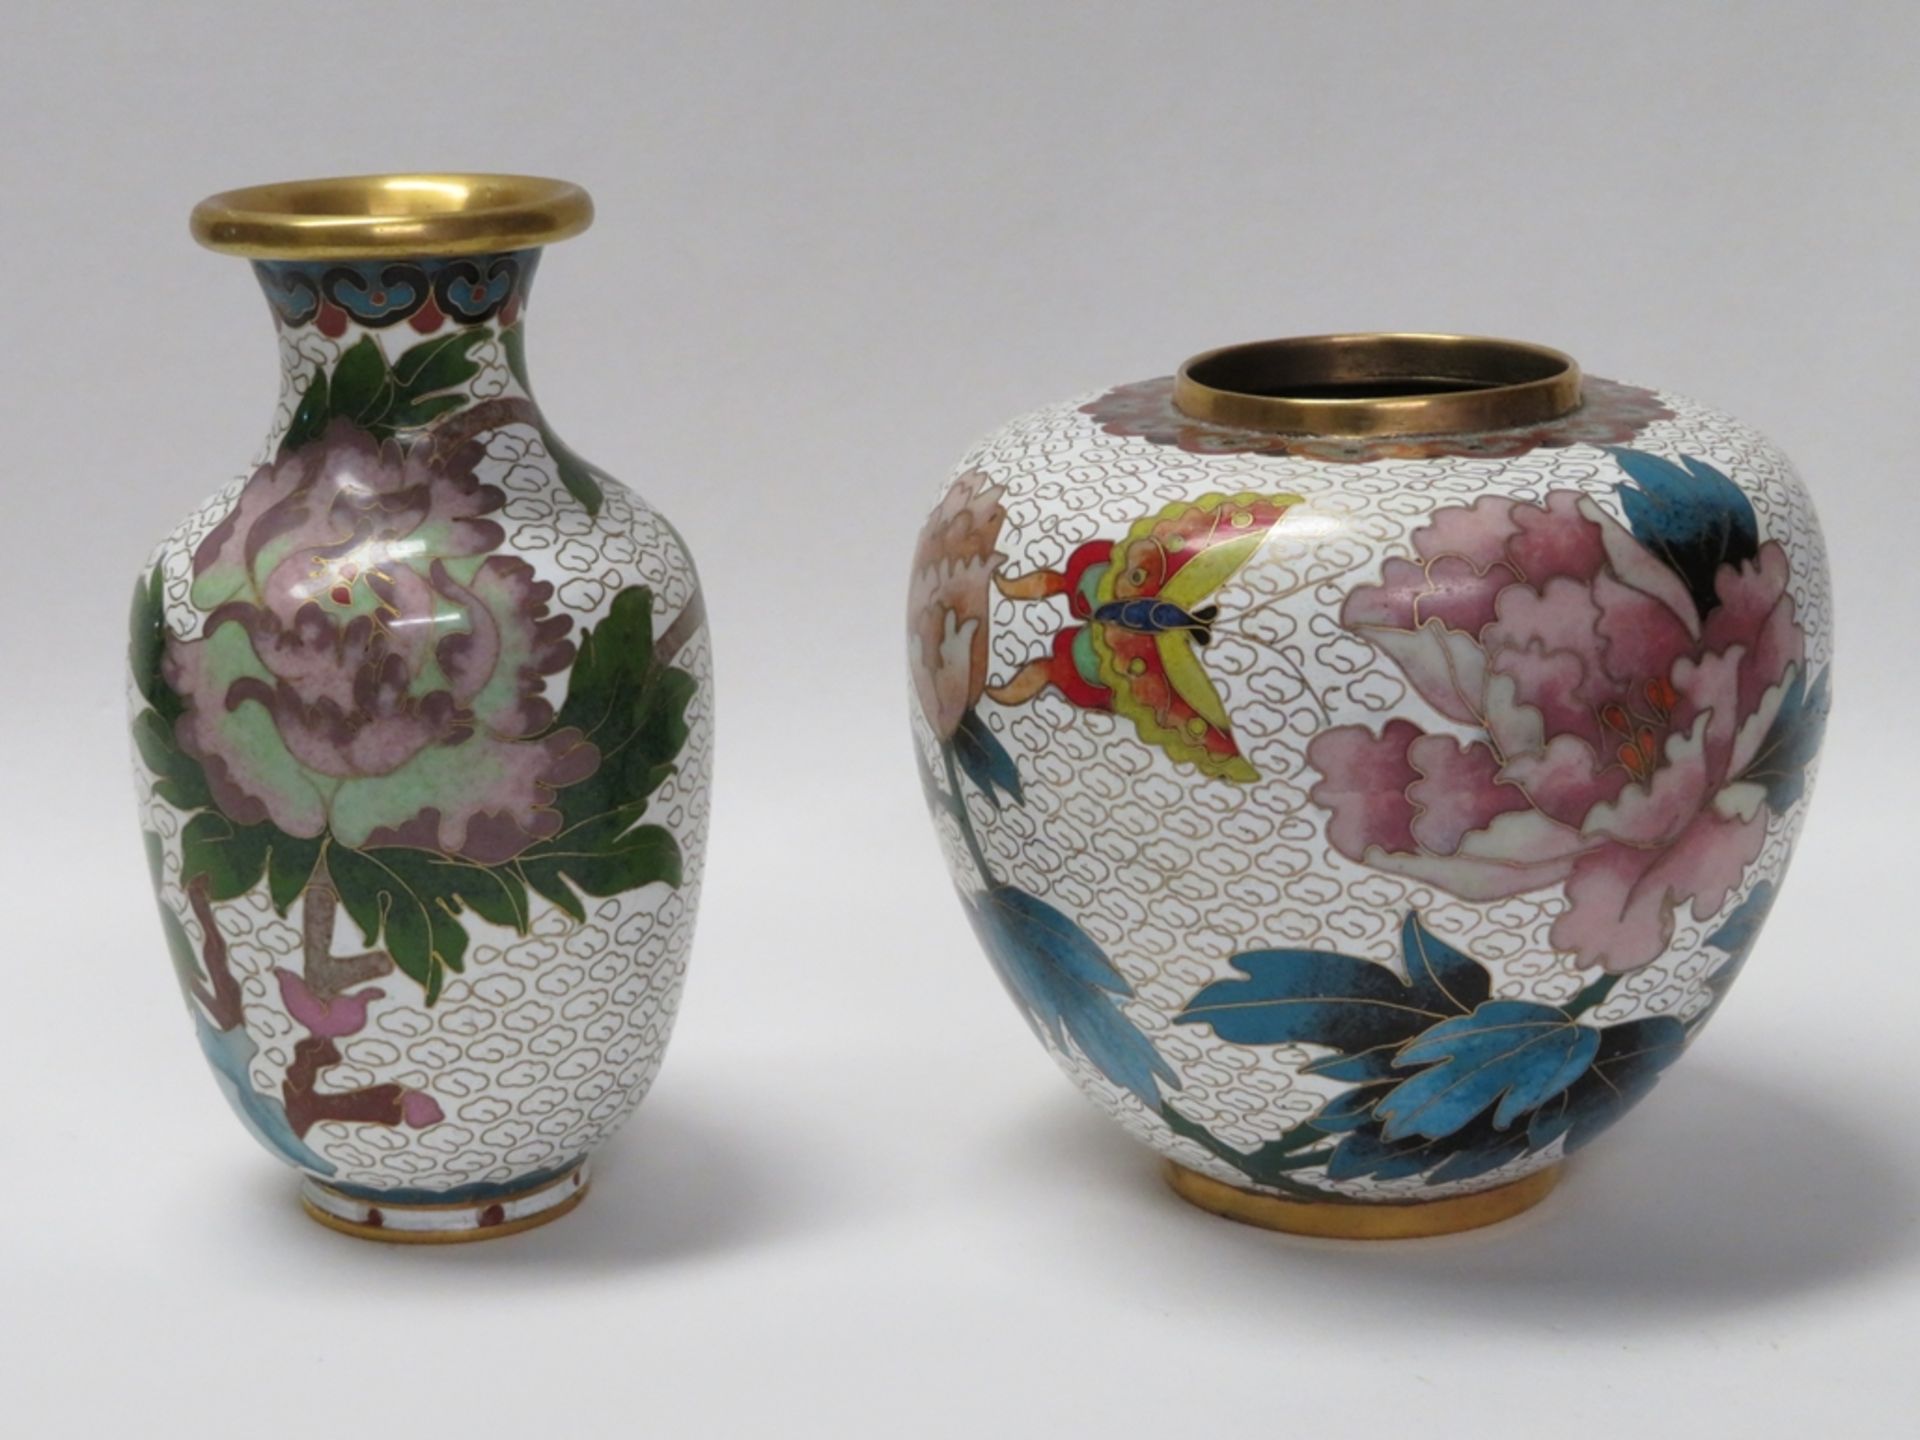 2 Cloisonné Vasen, China, weißgrundig mit polychromen Blüten, h 10/13 cm.